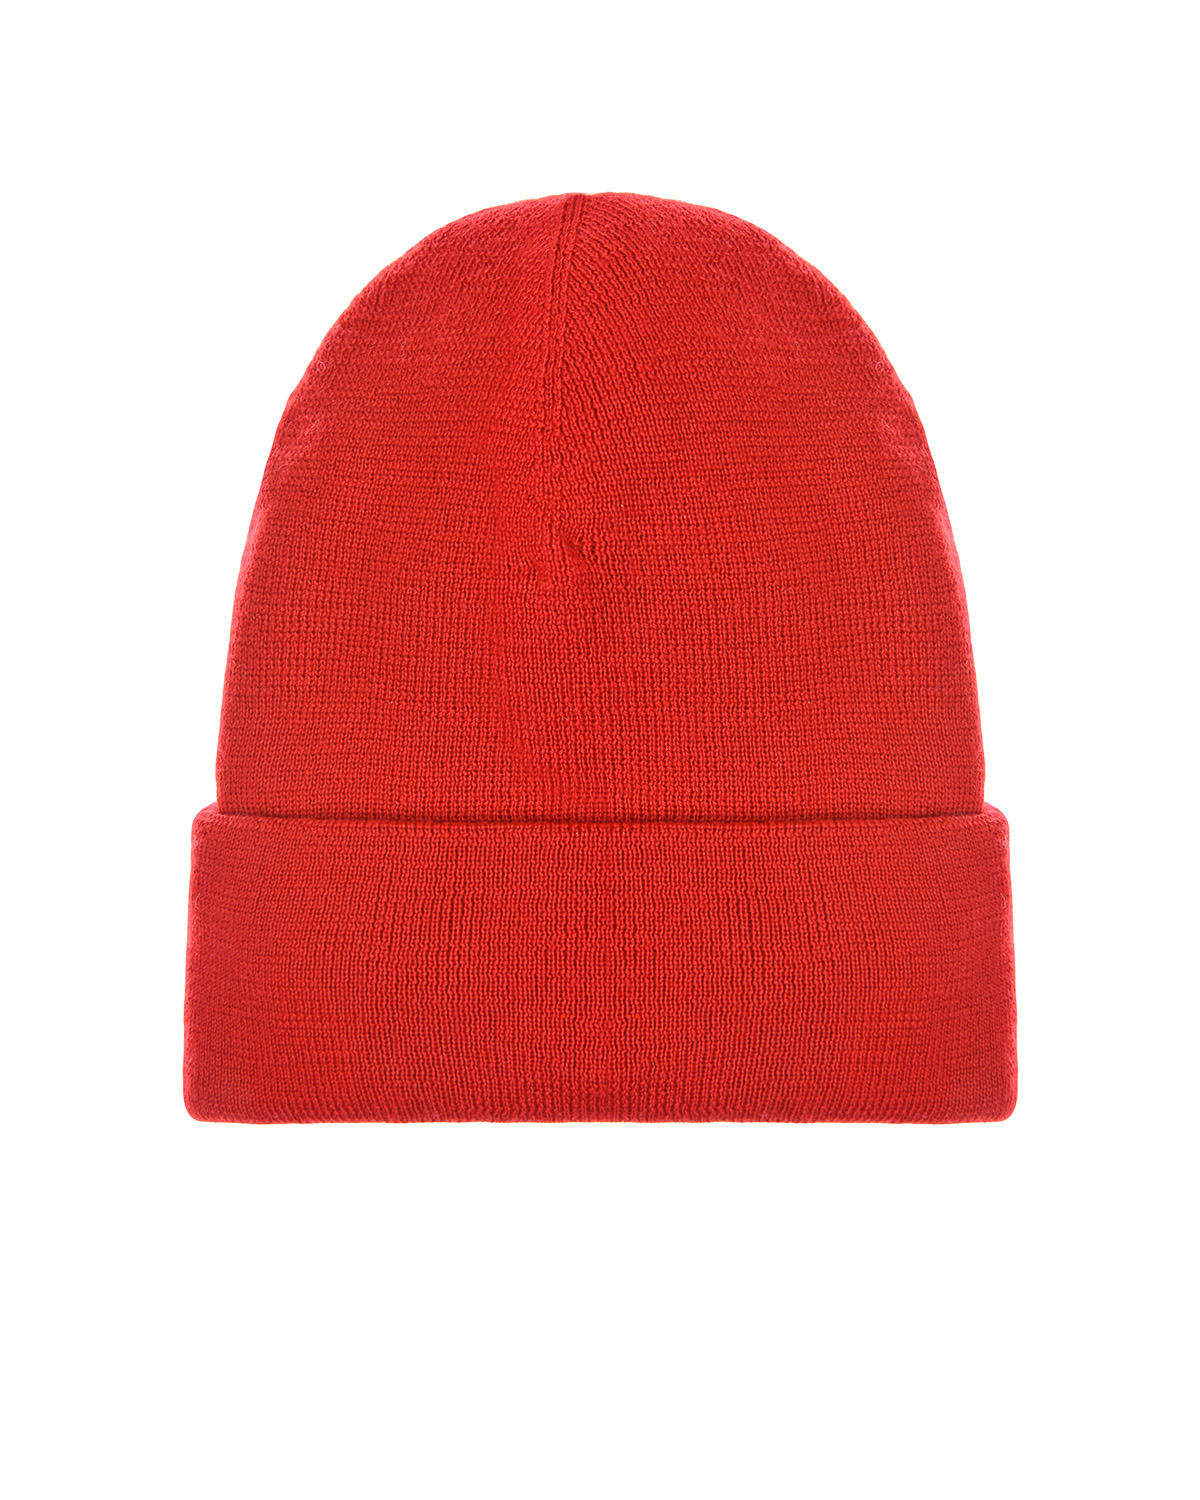 Красная шапка с патчами "London" Regina детская, размер 55/57, цвет красный - фото 2